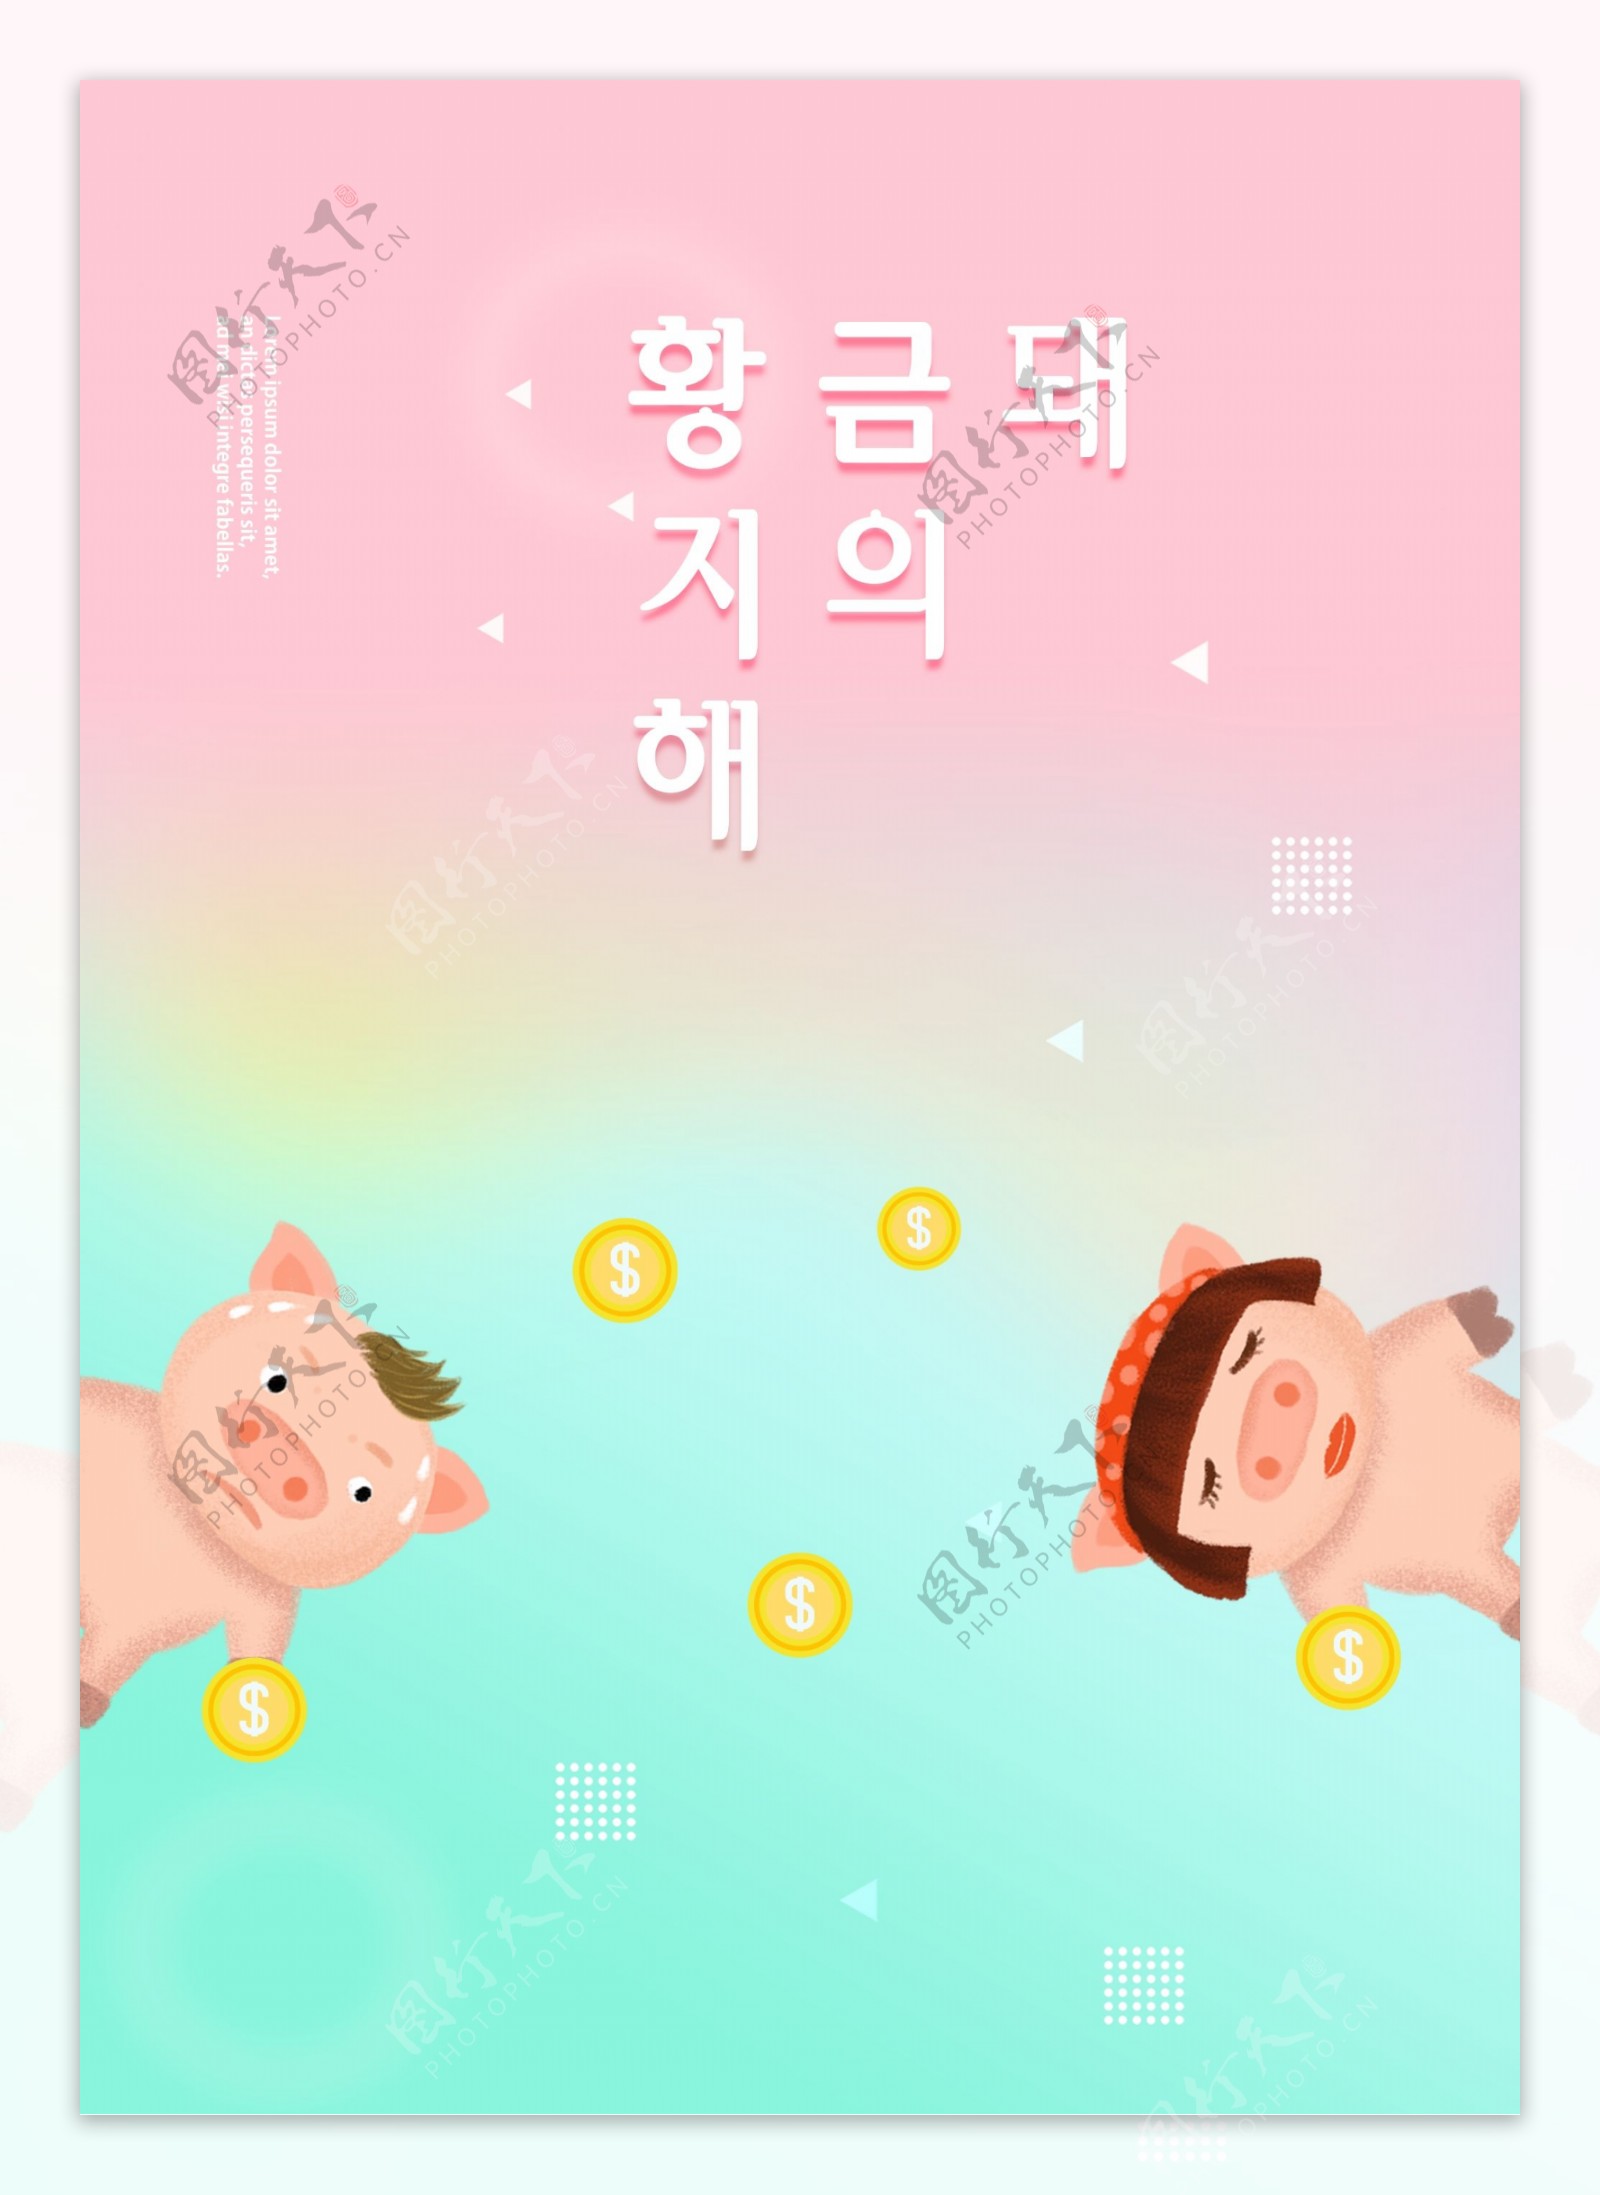 粉色蓝色可爱卡通2019年金猪新年海报